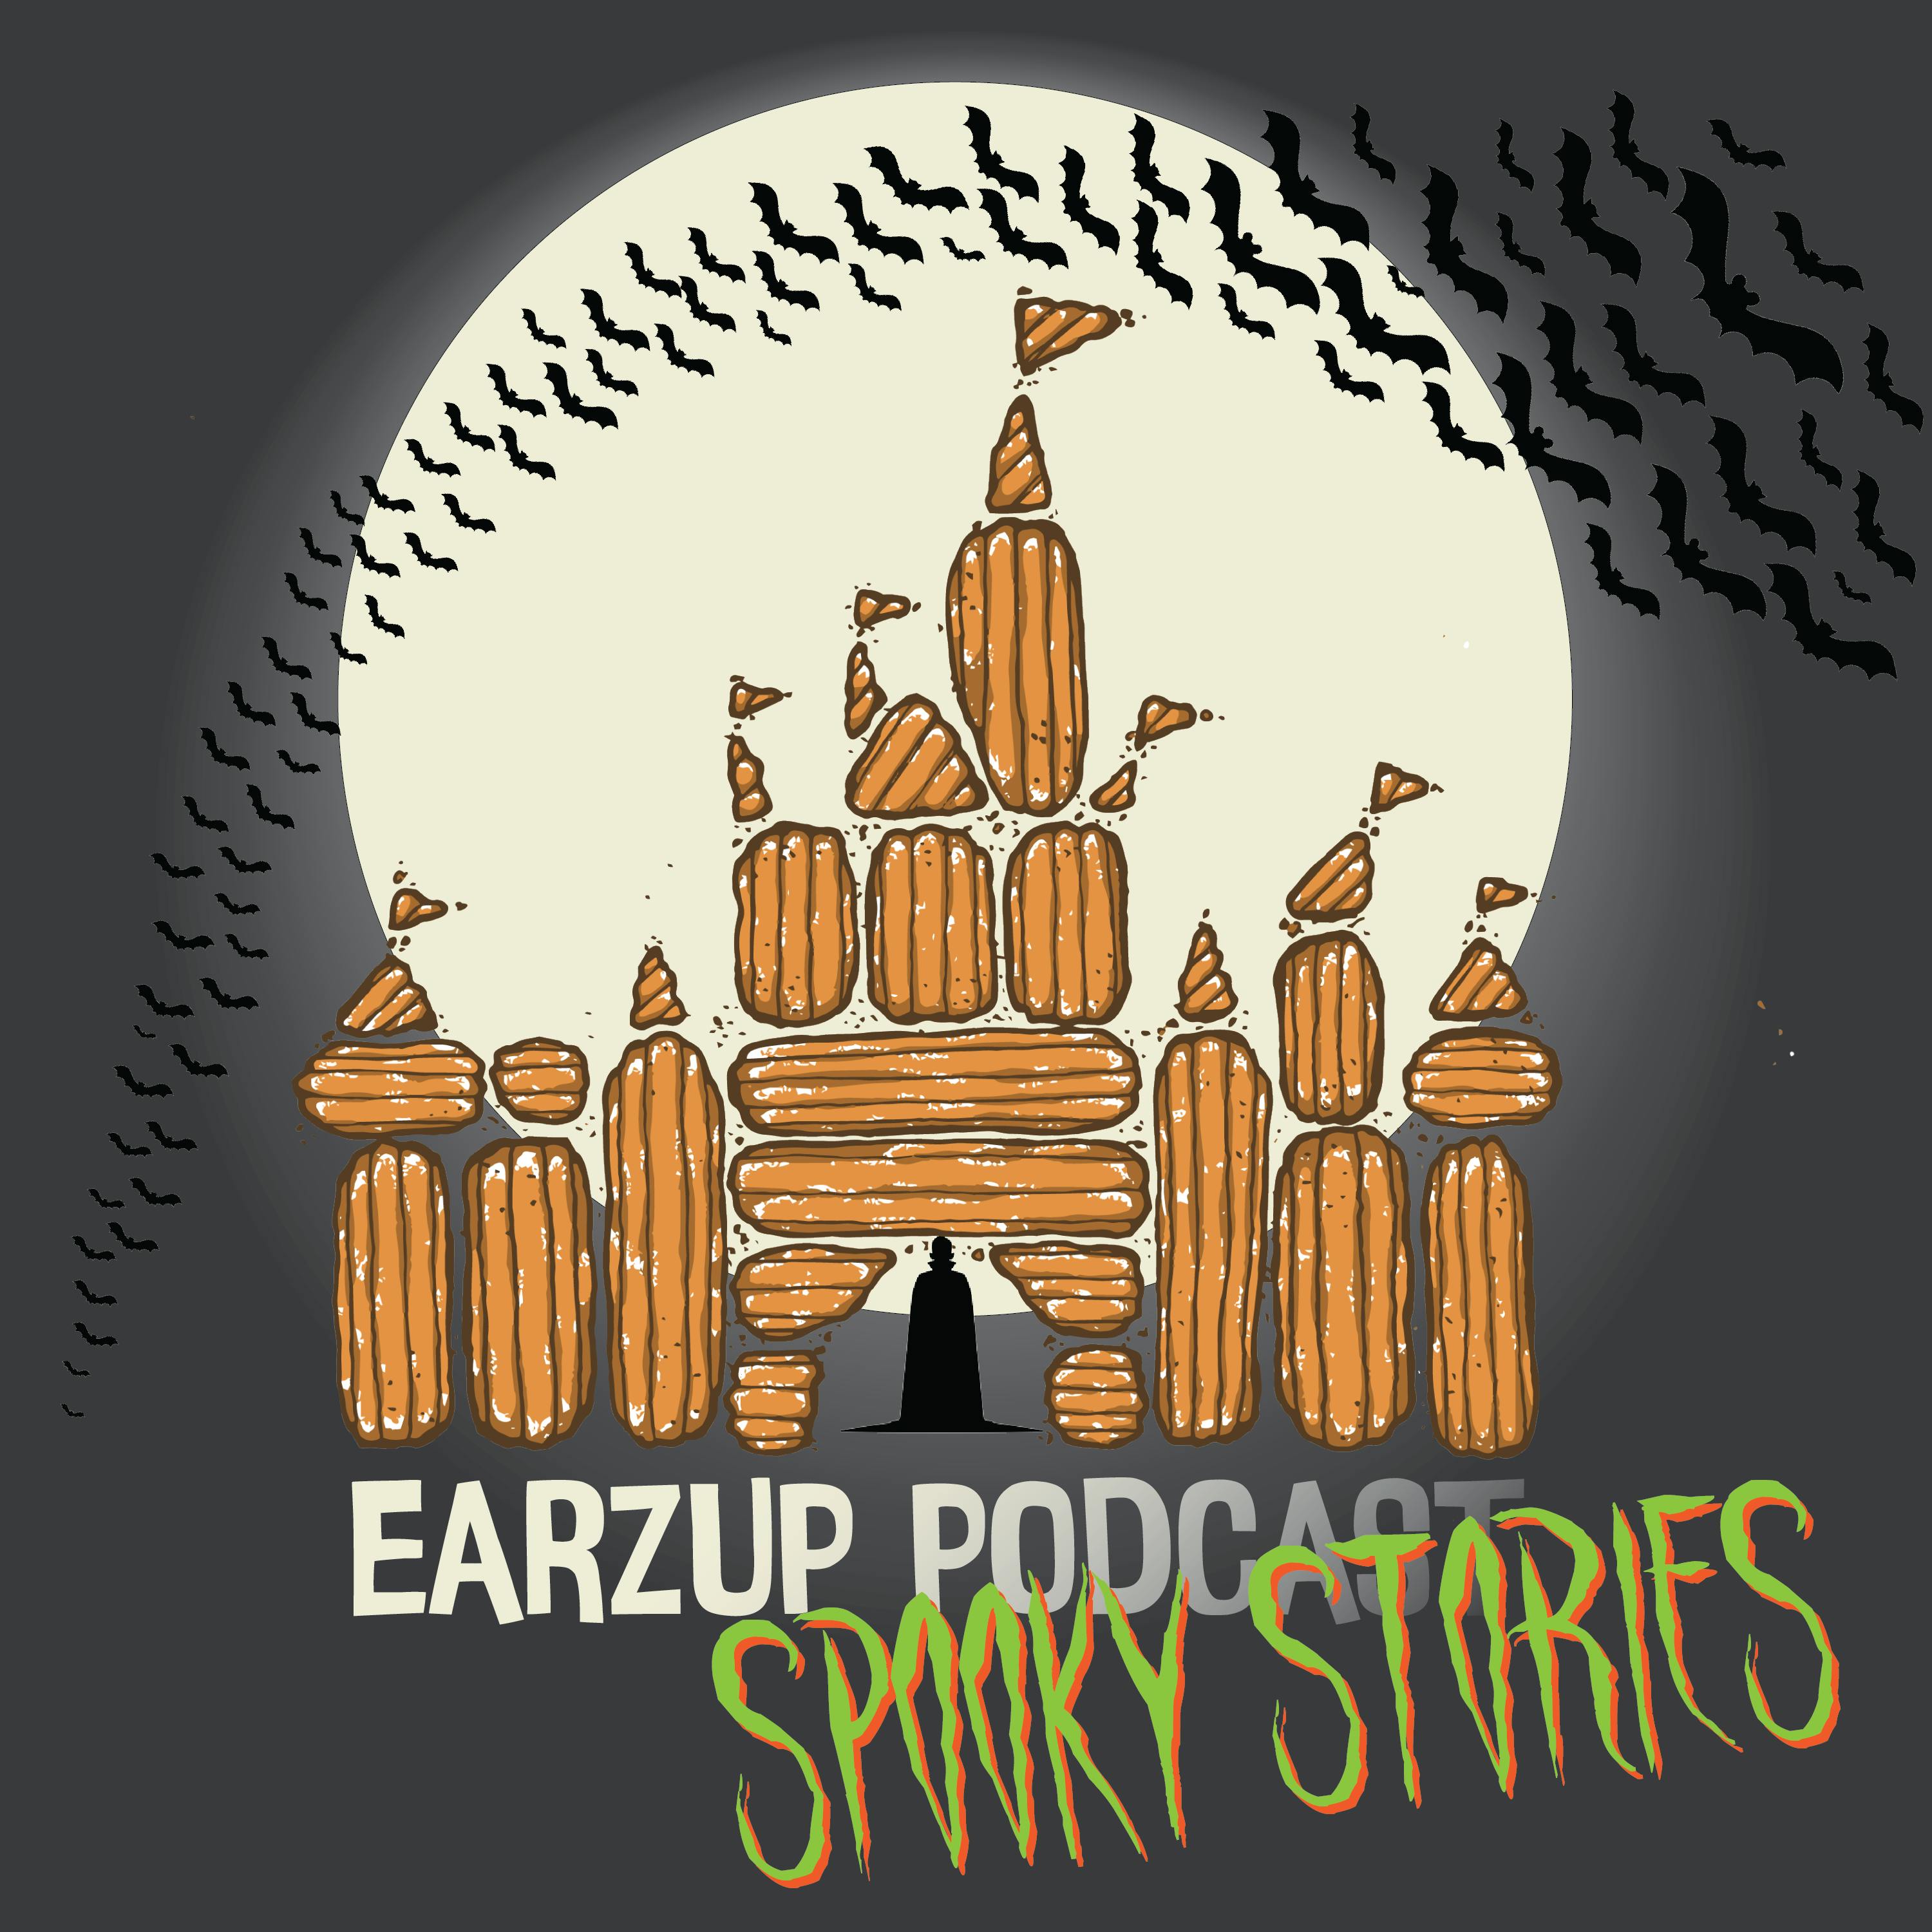 EarzUp! | Spooky Stories Vol. 3